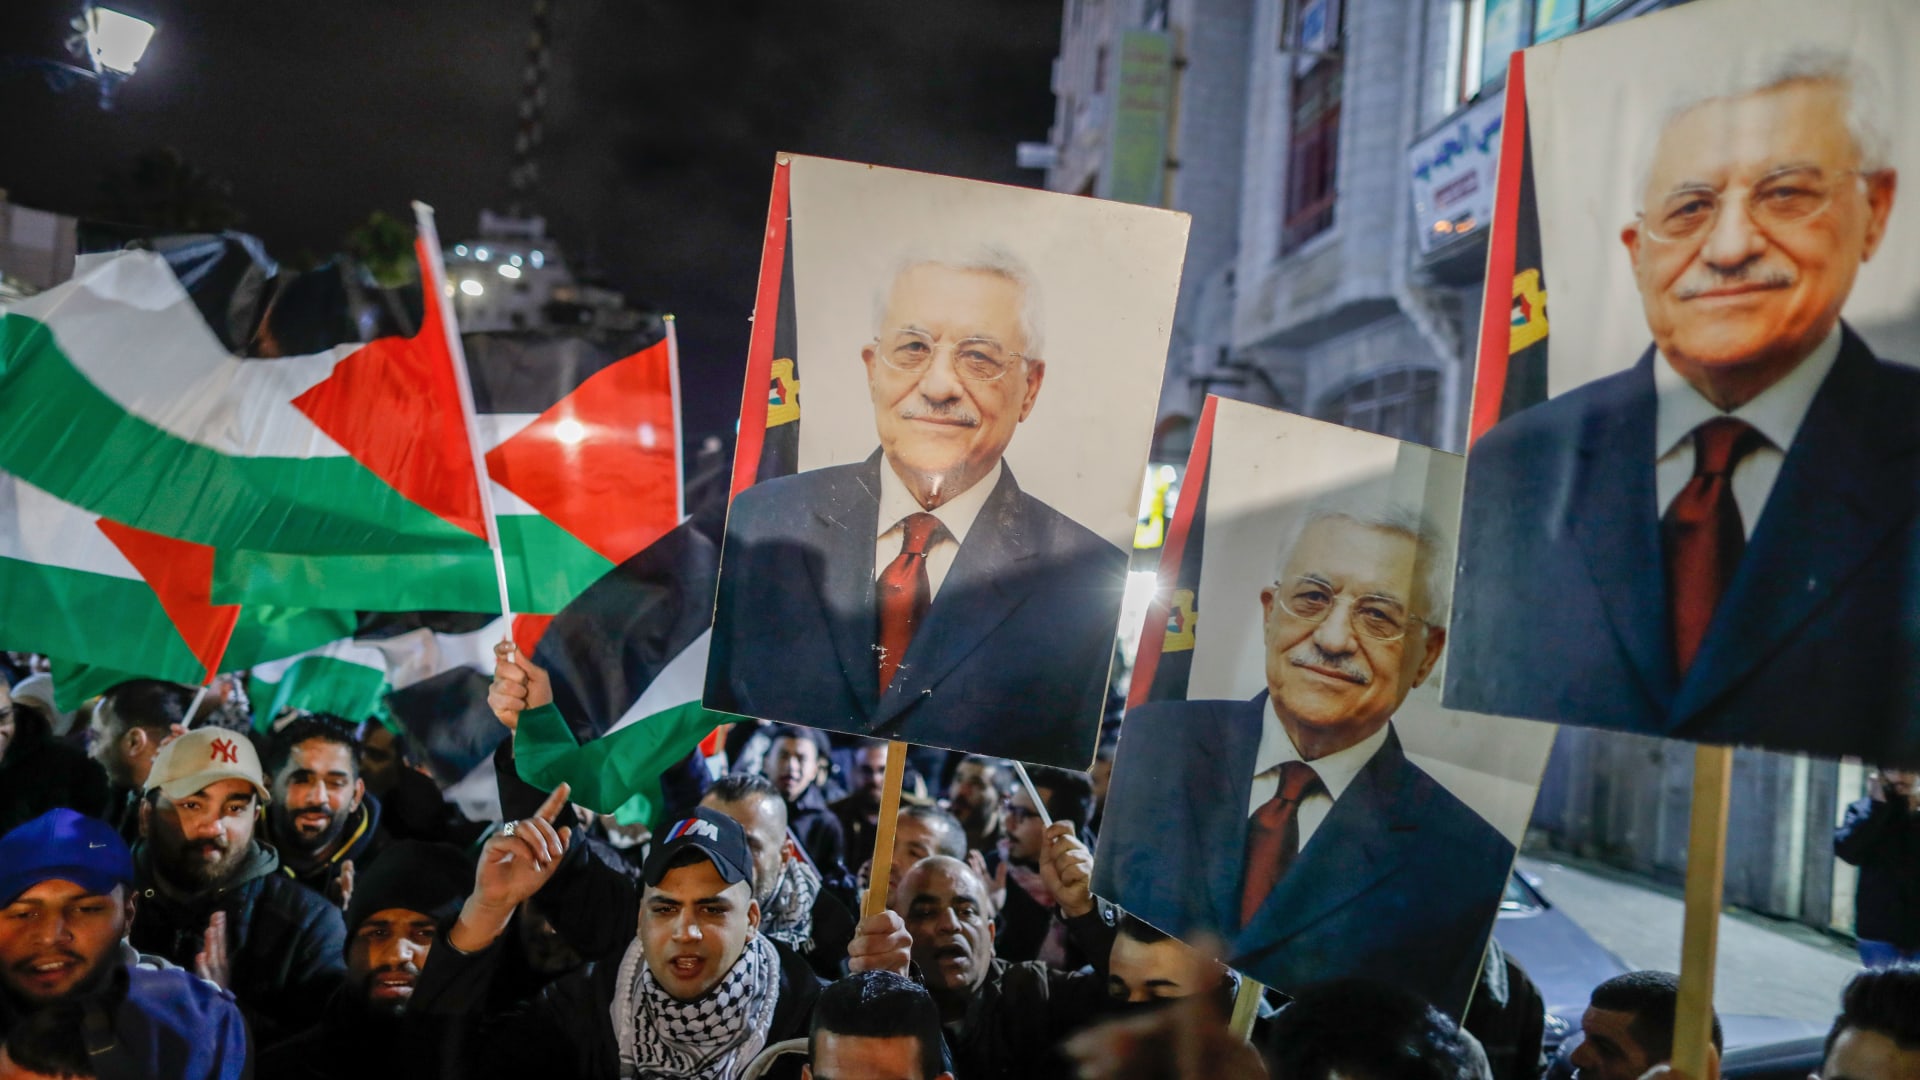 السفير الفلسطيني في لندن رداً على صفقة القرن: نحن لسنا للبيع